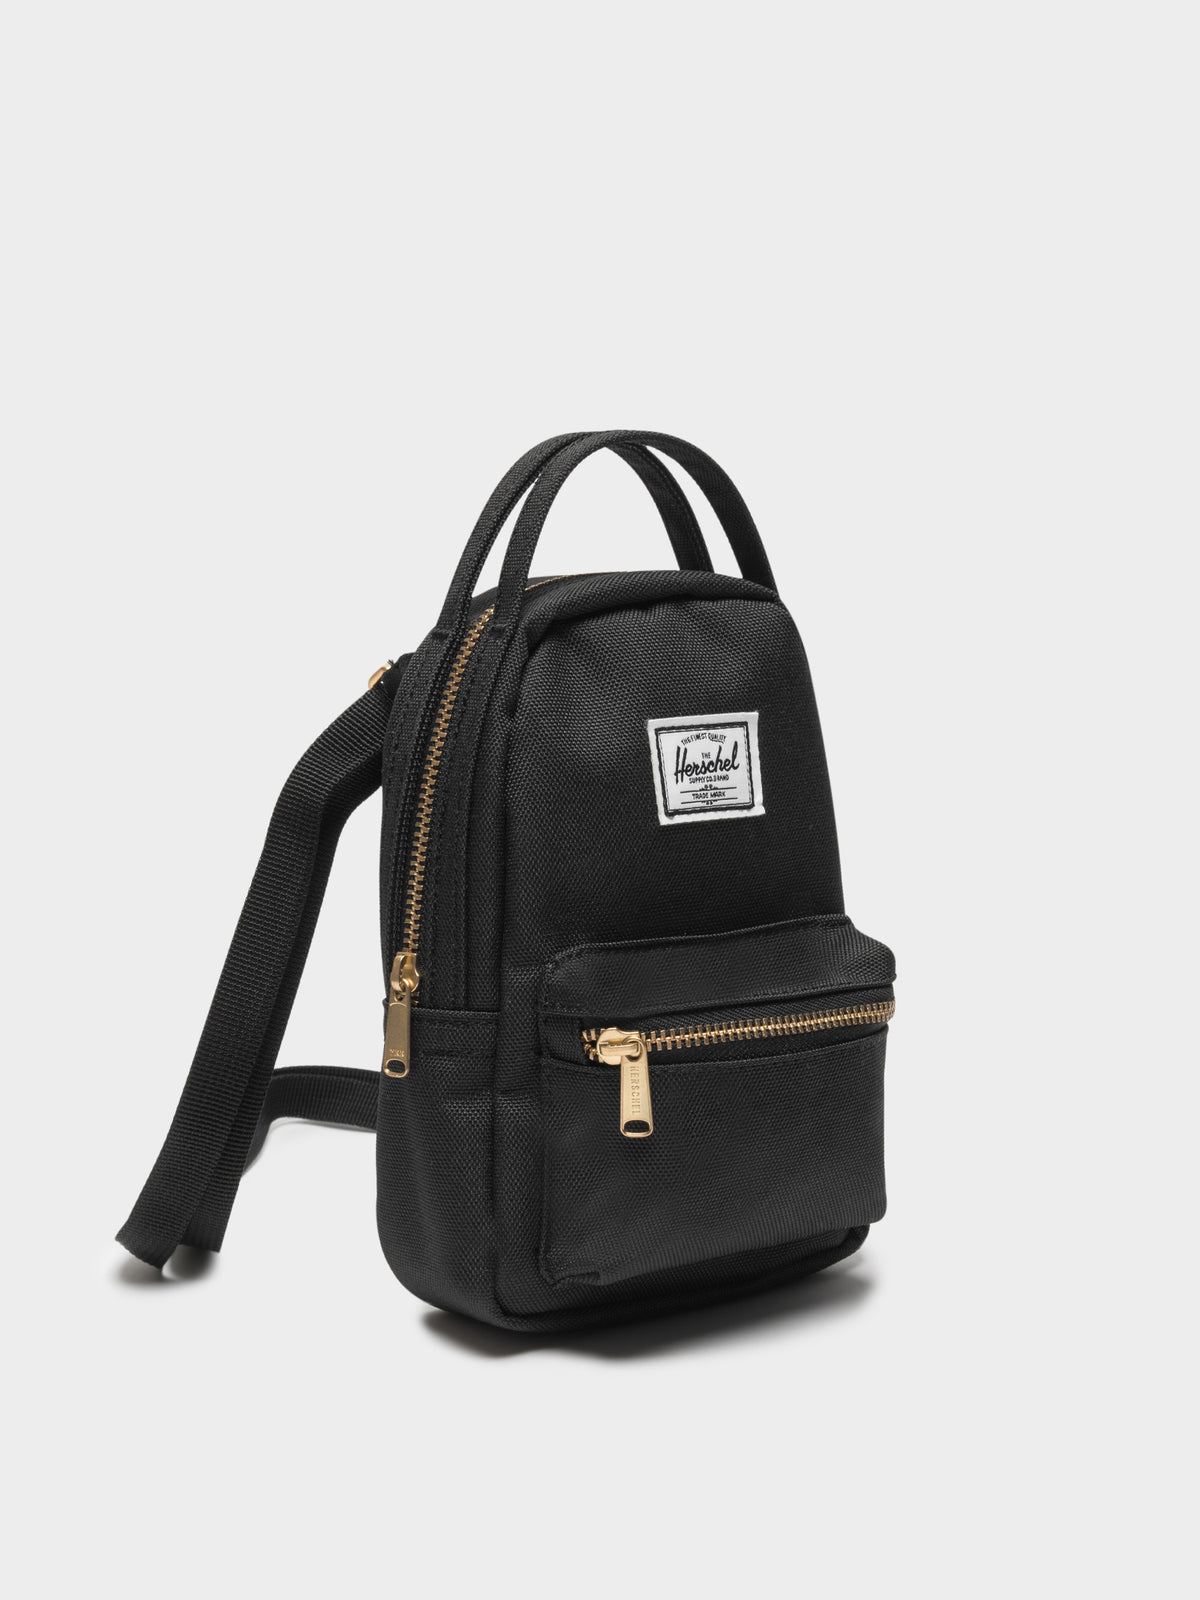 Nova Crossbody Bag in Black